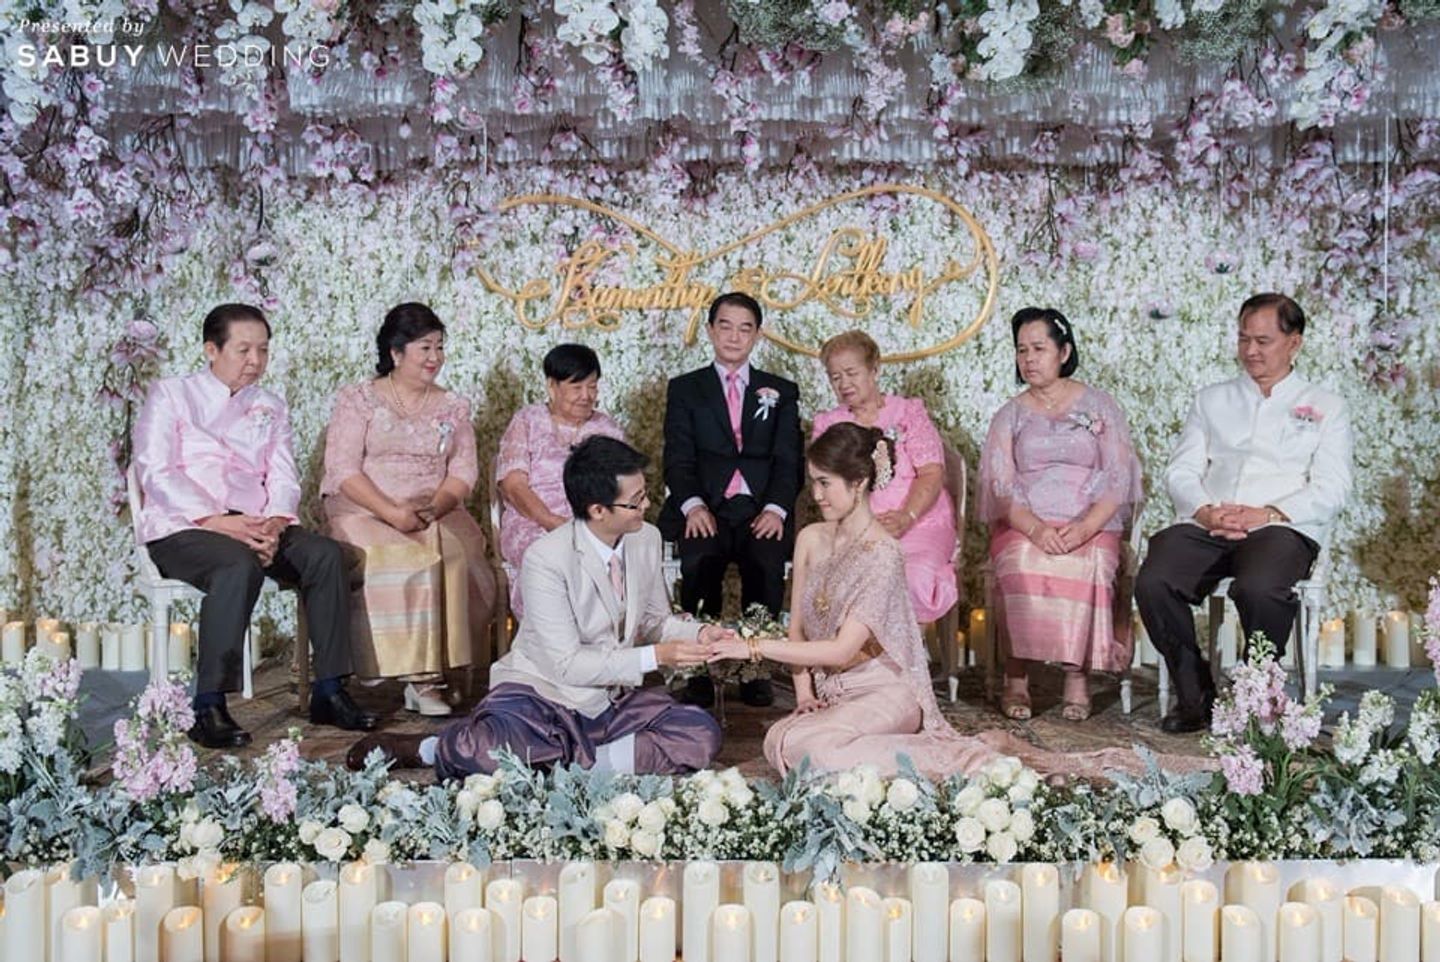 พิธีหมั้น,งานหมั้น,ชุดหมั้น,backdrop งานแต่ง,ตกแต่งงานแต่ง,จัดดอกไม้งานแต่ง,ครอบครัวบ่าวสาว รีวิวงานแต่งหวานละมุนด้วยดอกไม้ ดั่งเทพนิยายในฝัน @Siam Kempinski Hotel Bangkok